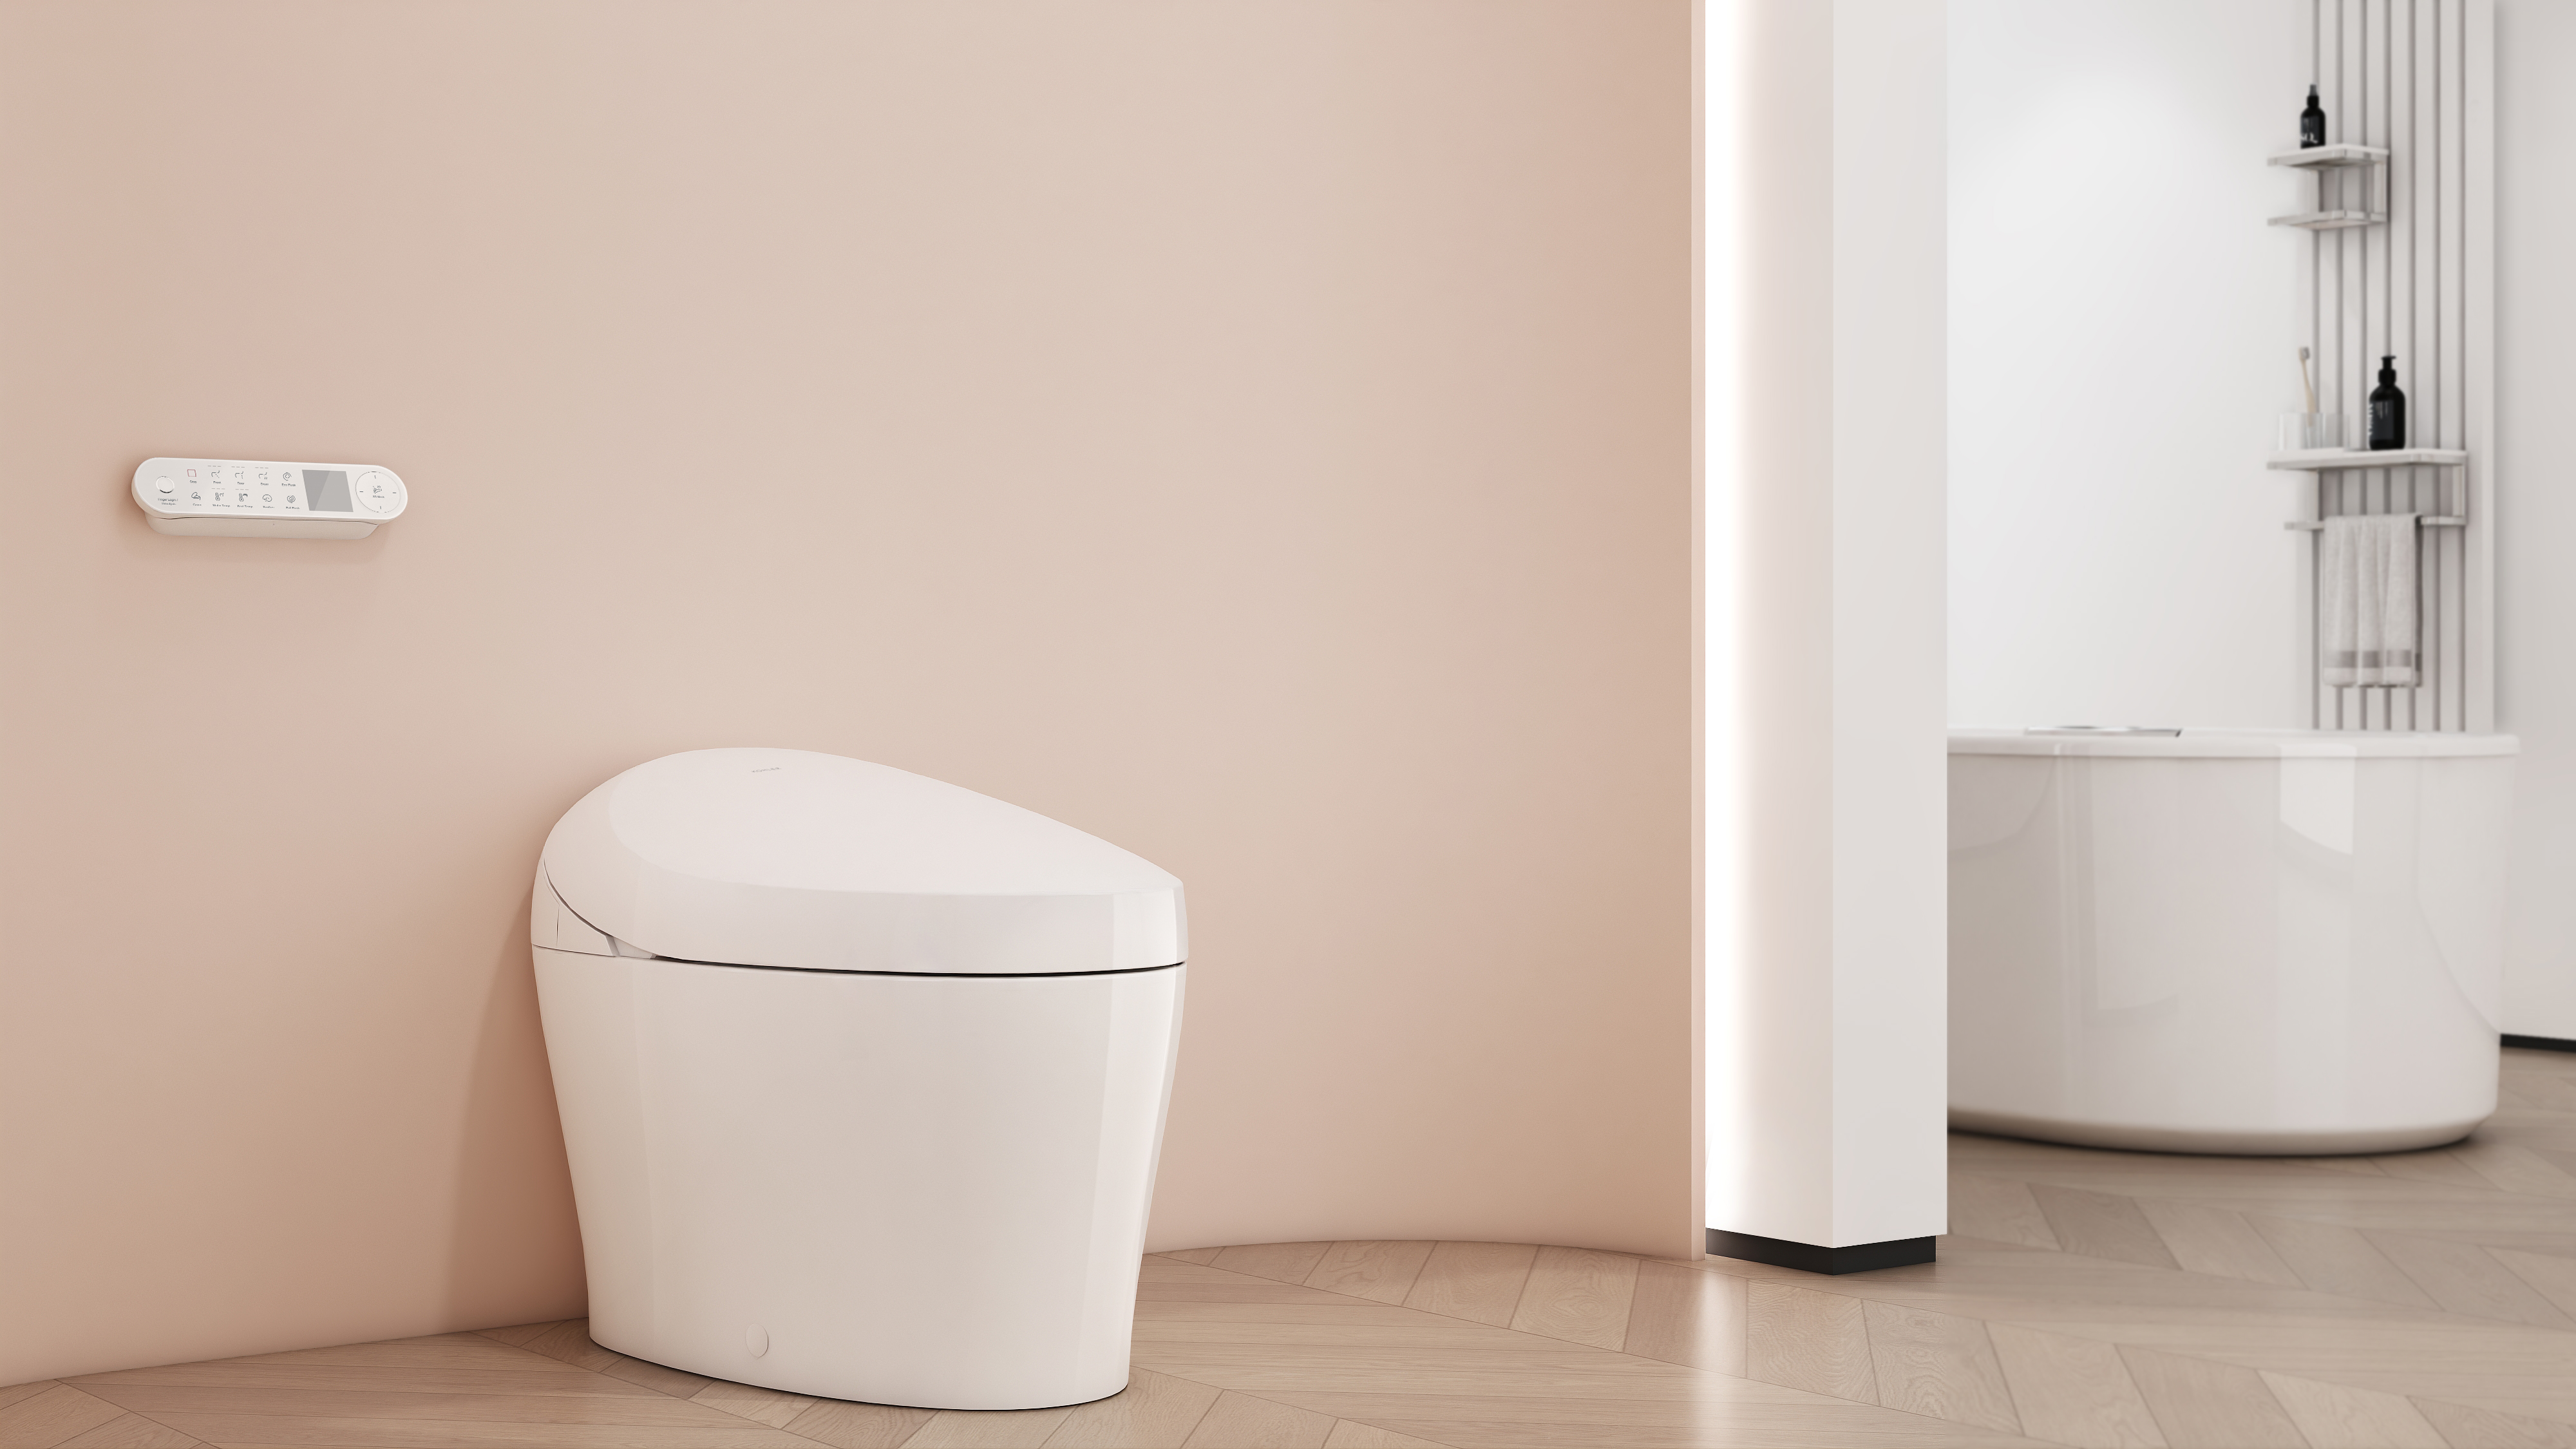 KARING 3.0 - Urinalysis Intelligent Toilet